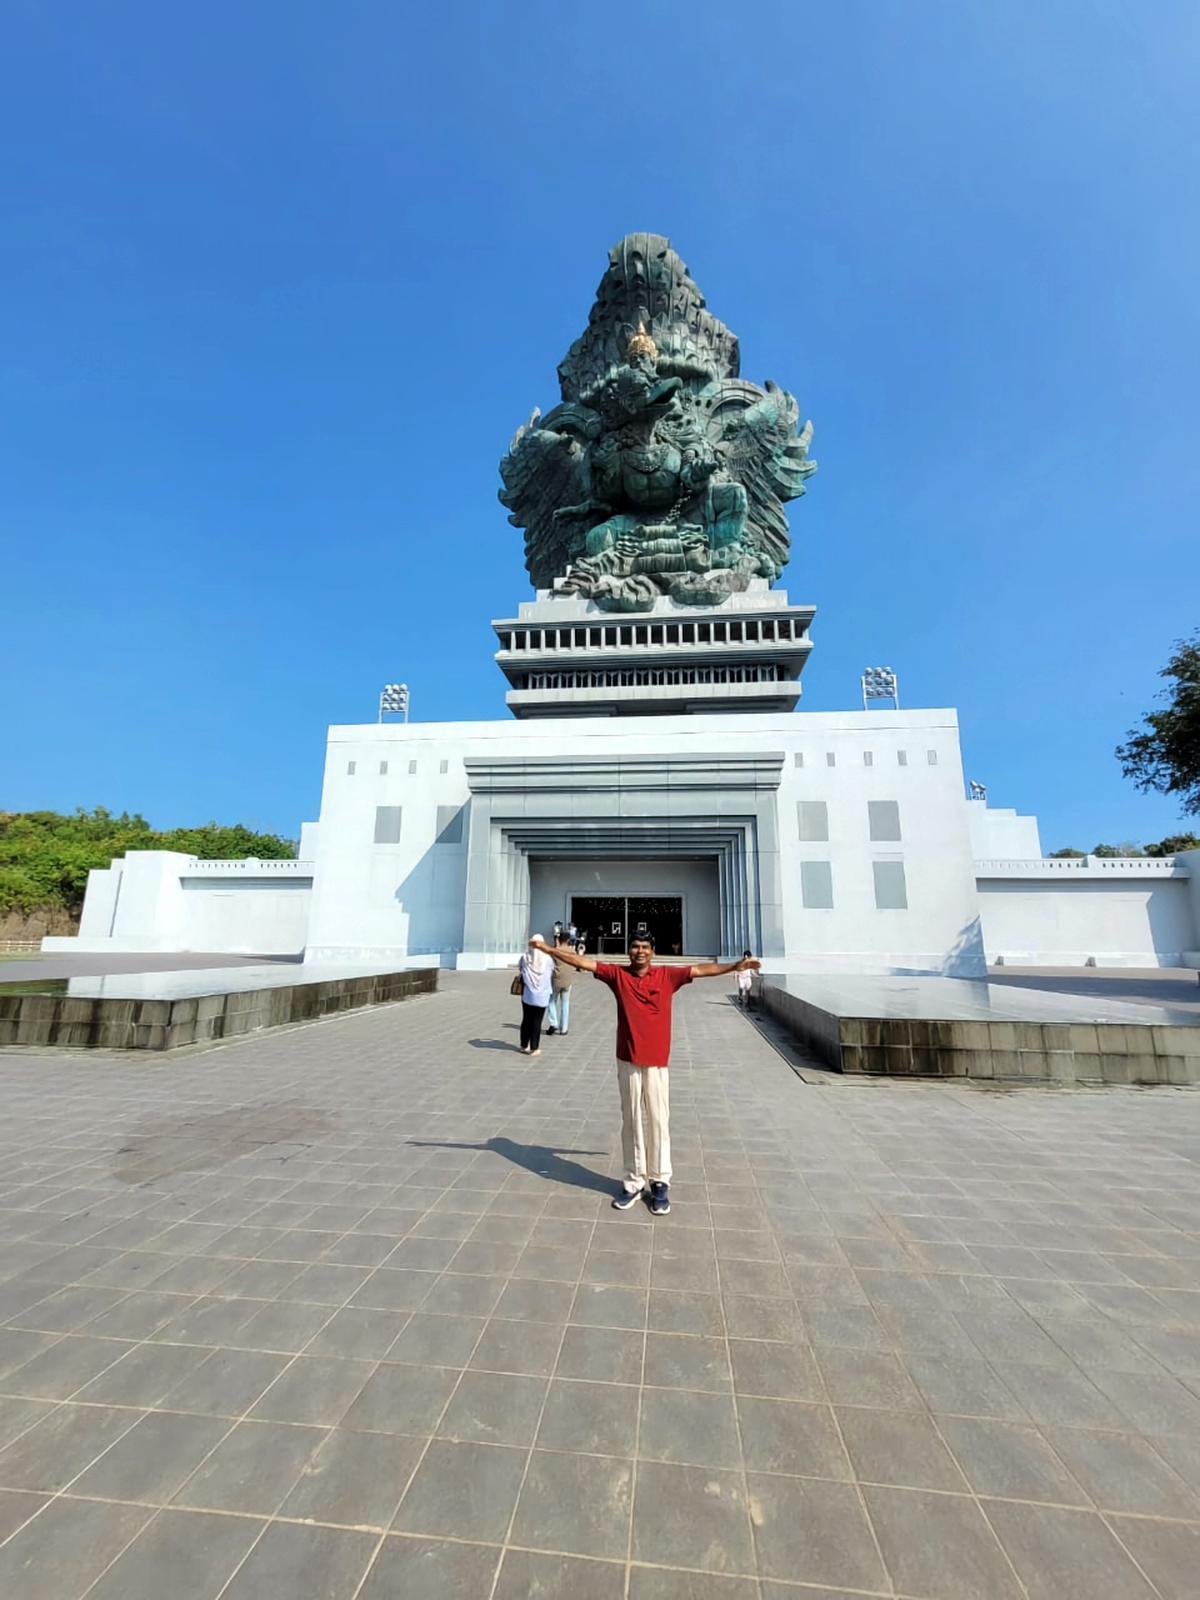 Kavirajan P.K. in front of Garuda Wisnu Kencana statue in Indonesia.